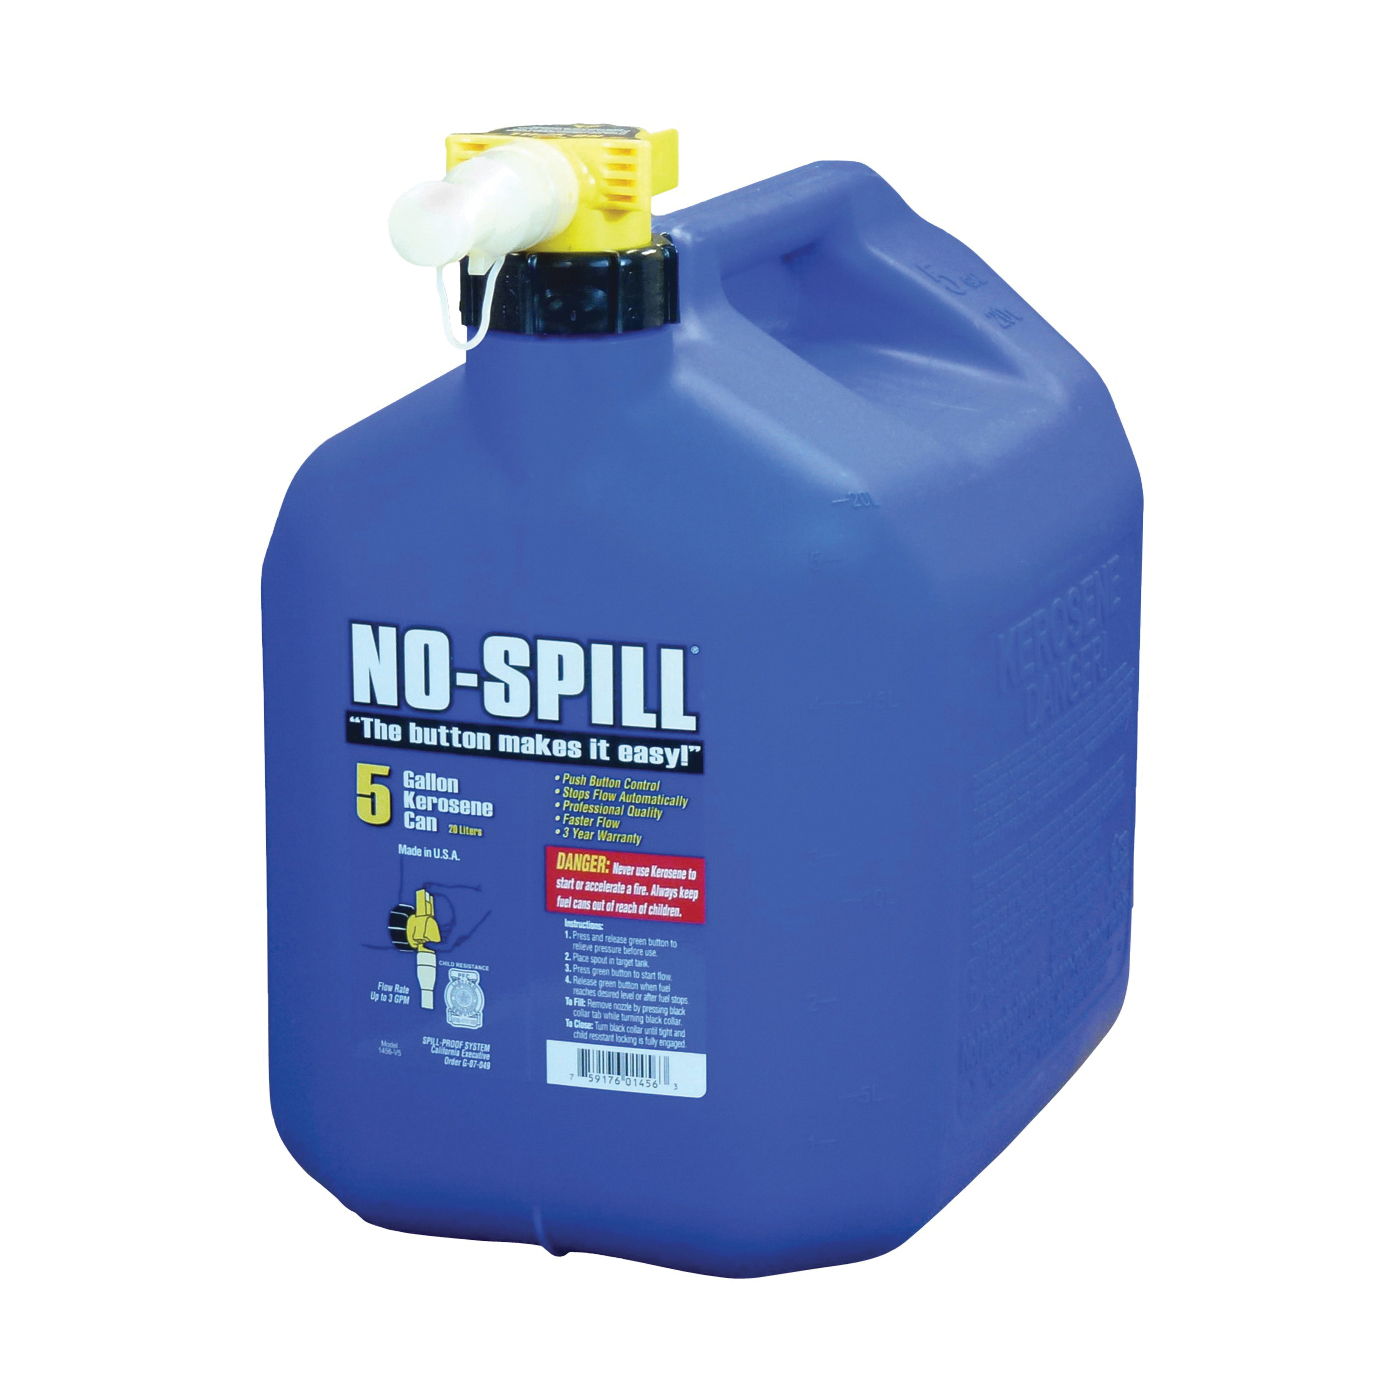 No-spill 1456